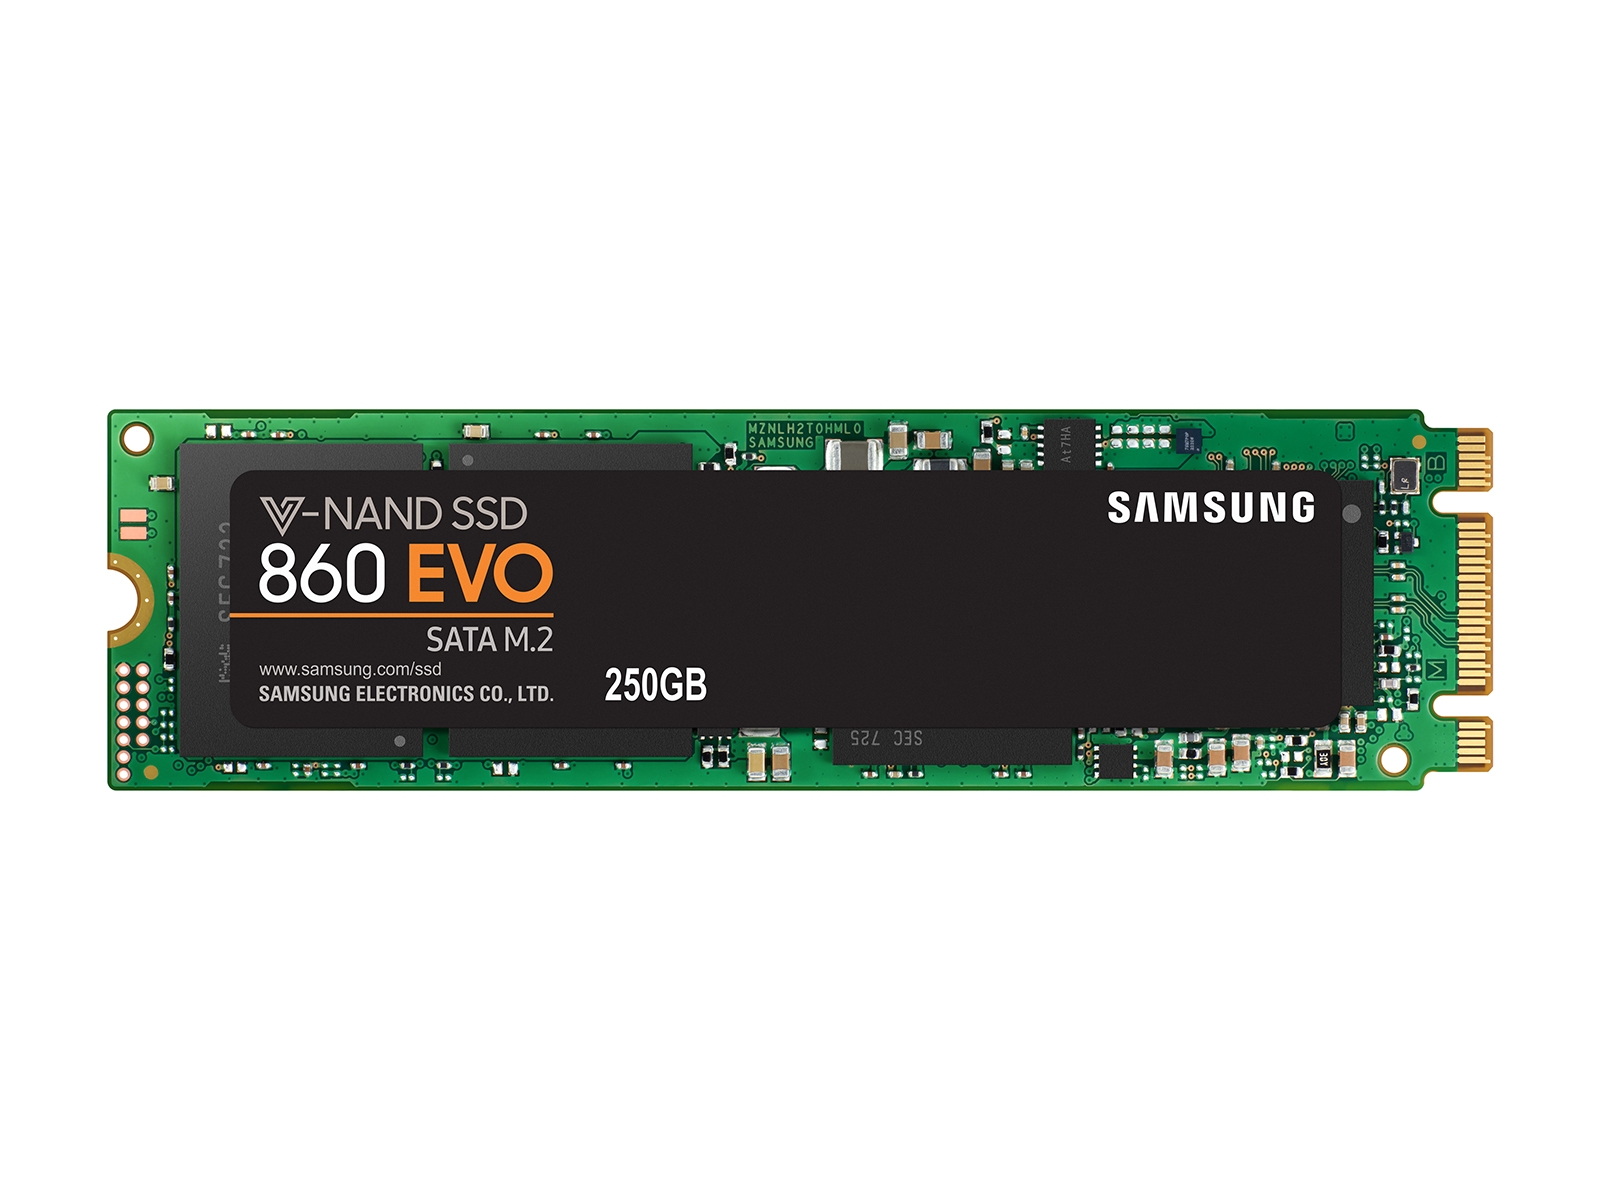 SSD 860 EVO M.2 SATA 250GB Memory & Storage - MZ-N6E250BW | Samsung US